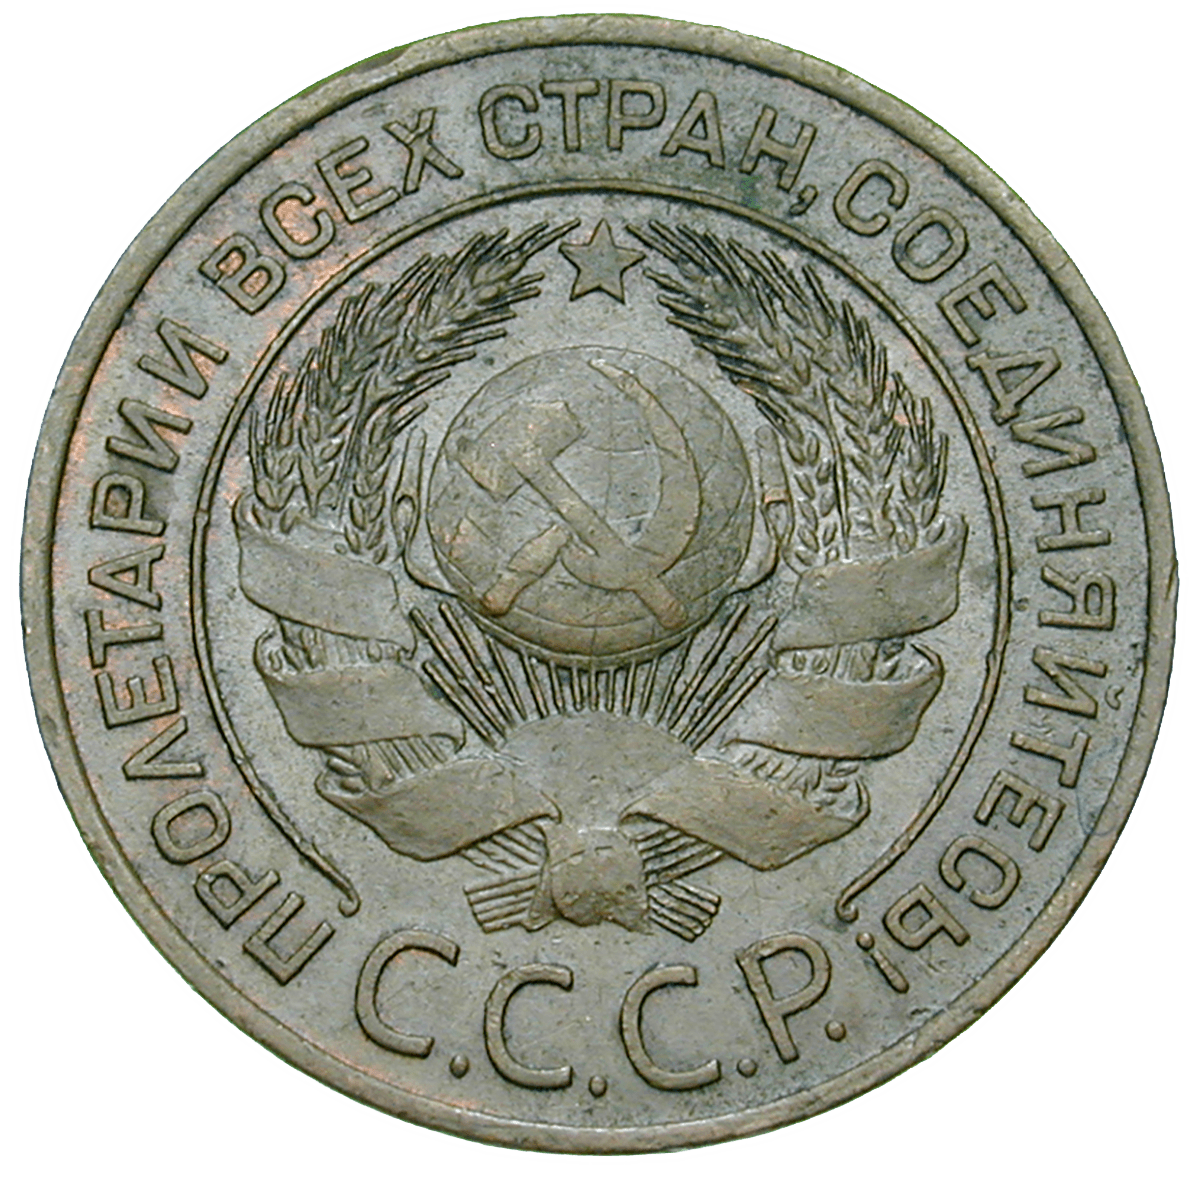 Union der Sozialistischen Sowjetrepubliken, 3 Kopeken 1924 (obverse)